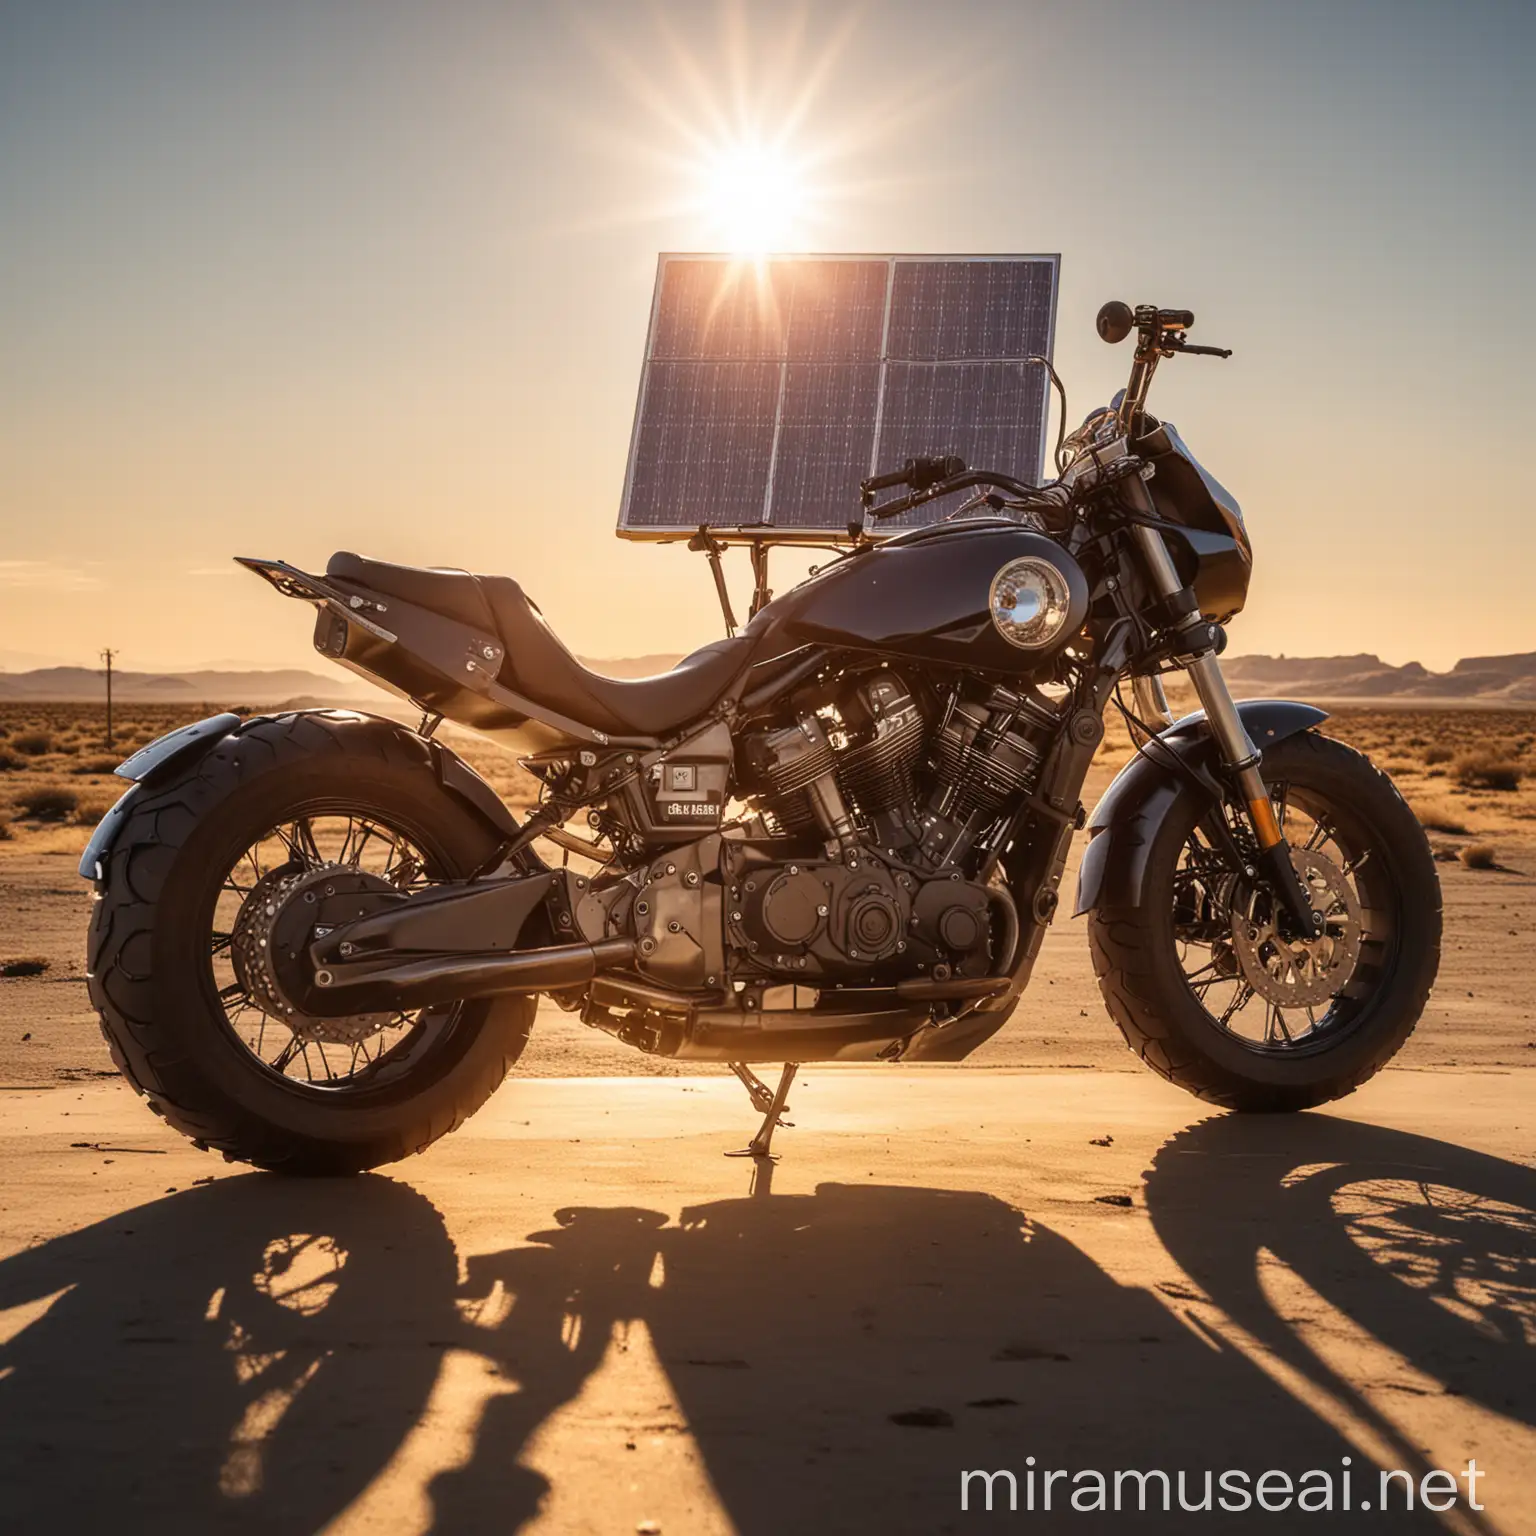 moto grande con panel solar y el sol en grande detrás